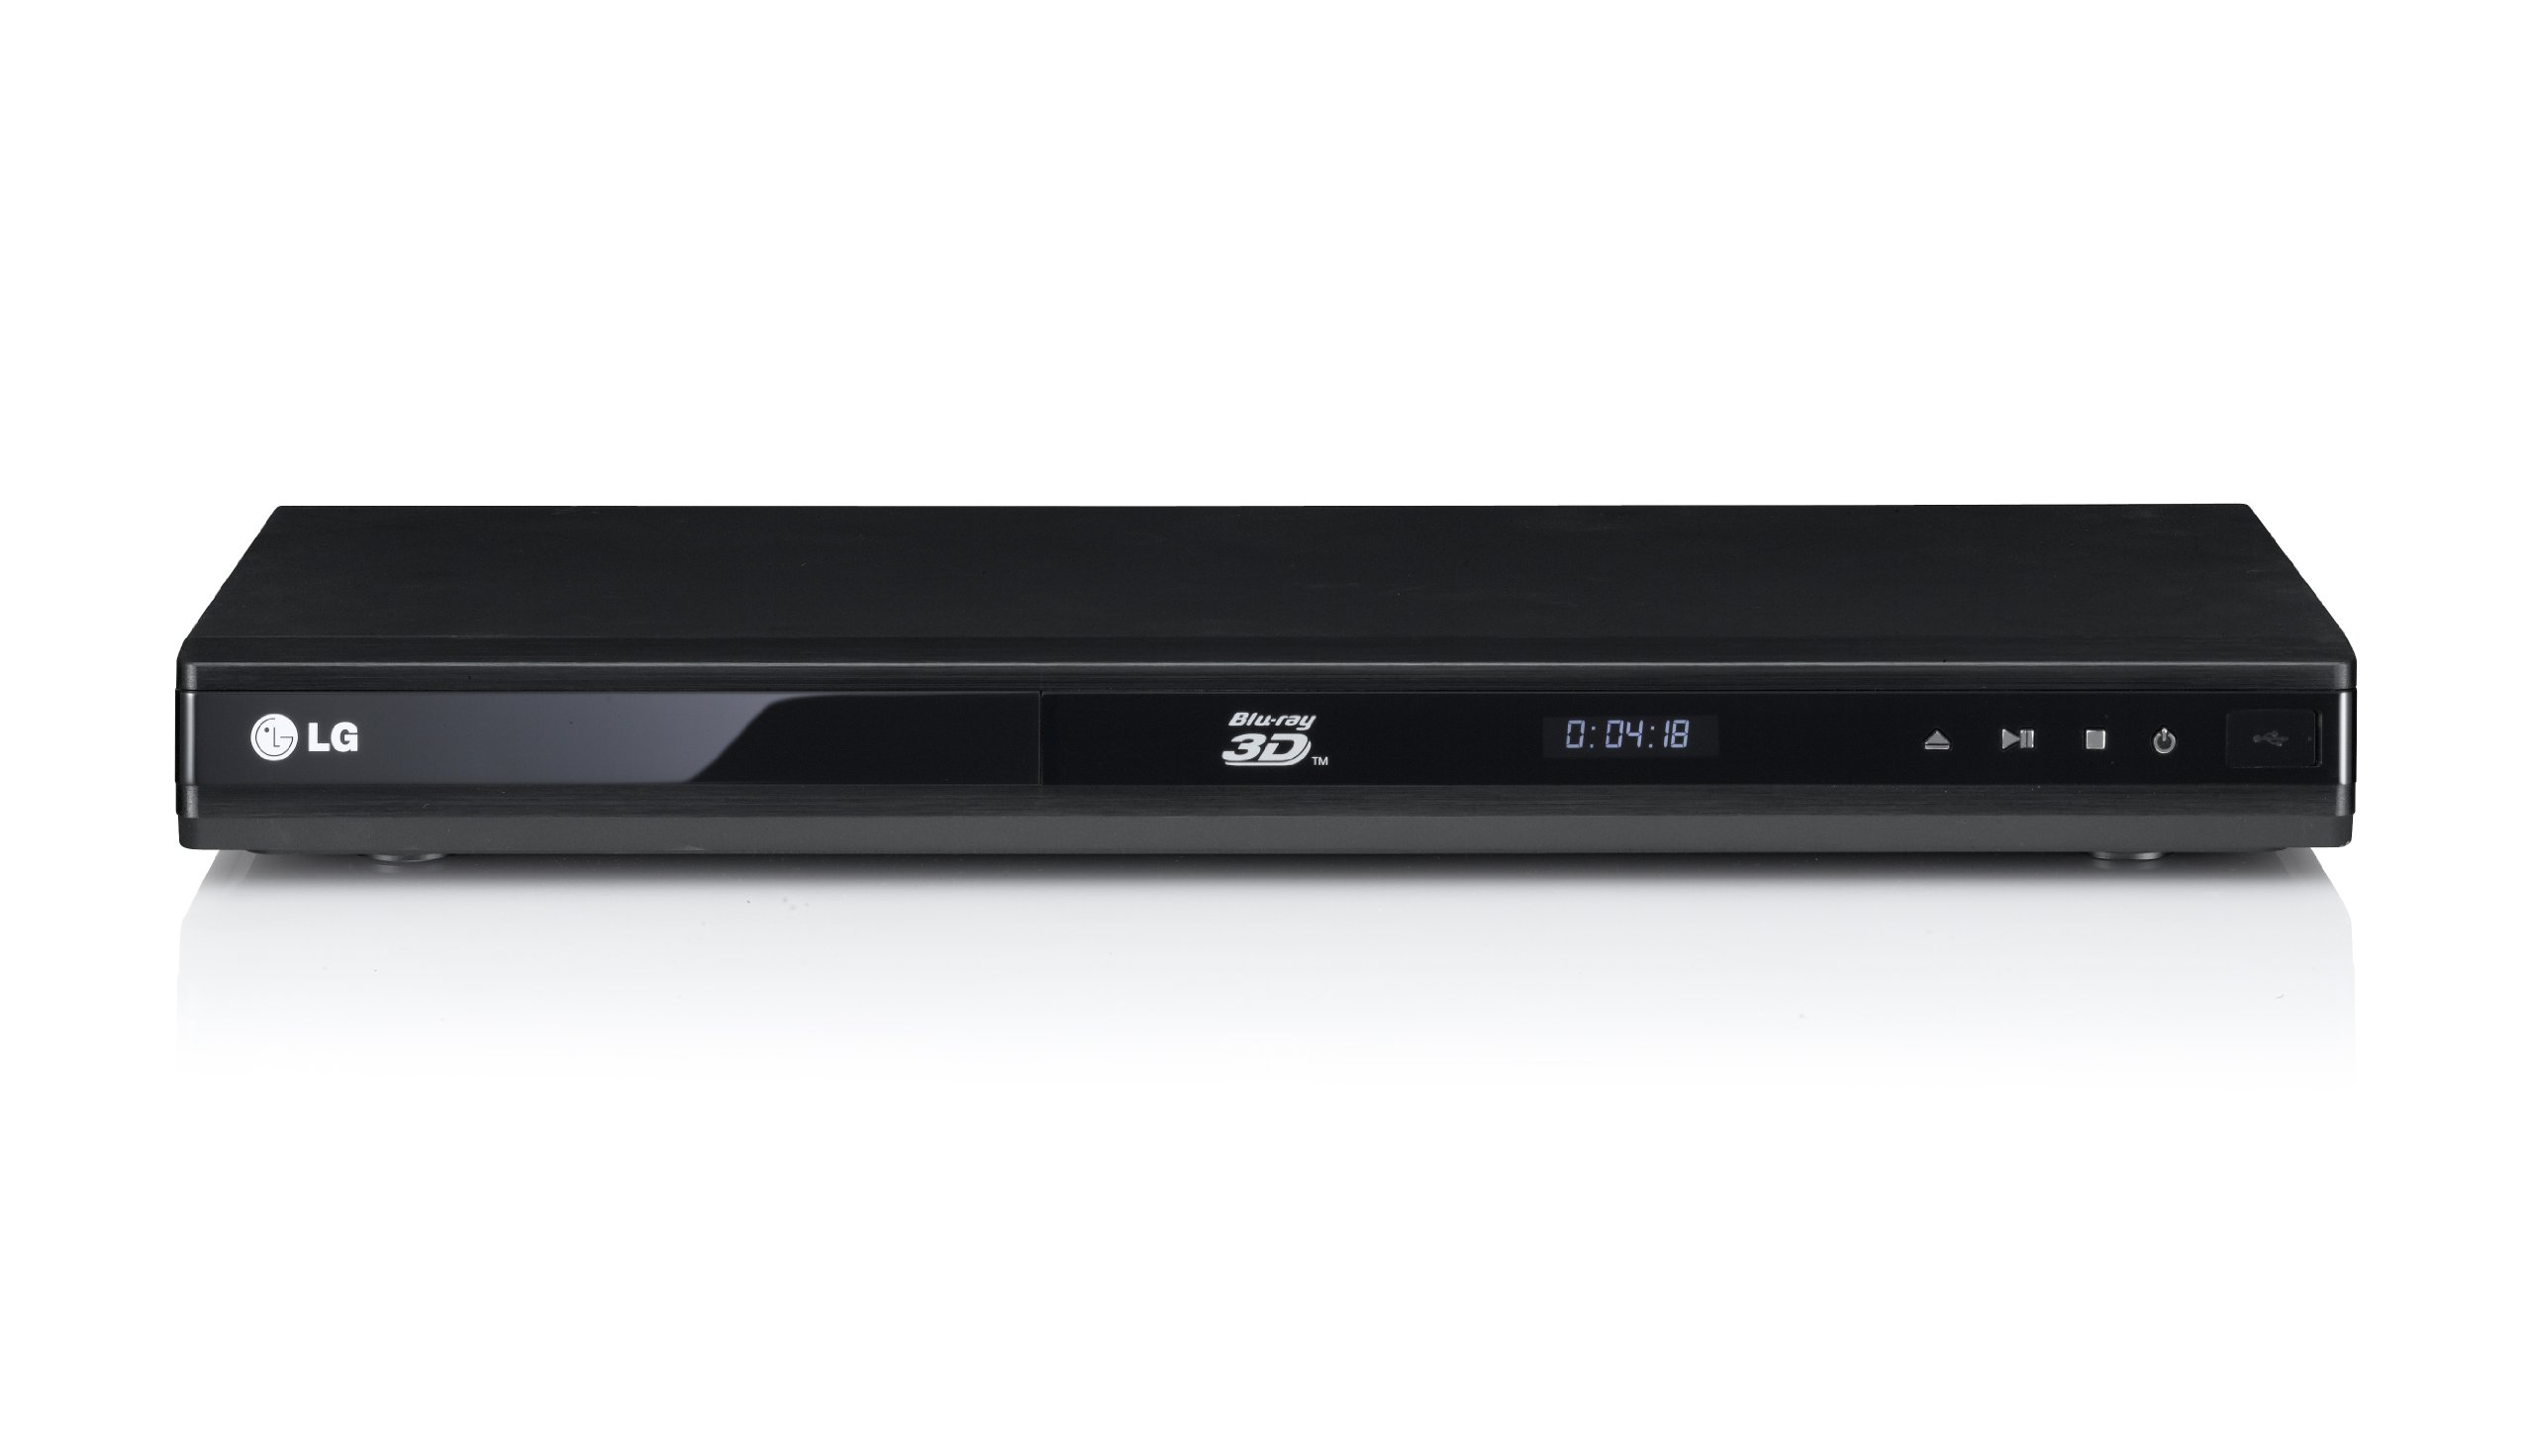 LG BP175: נגן DVD במחיר סביר עם יכולות מתקדמות